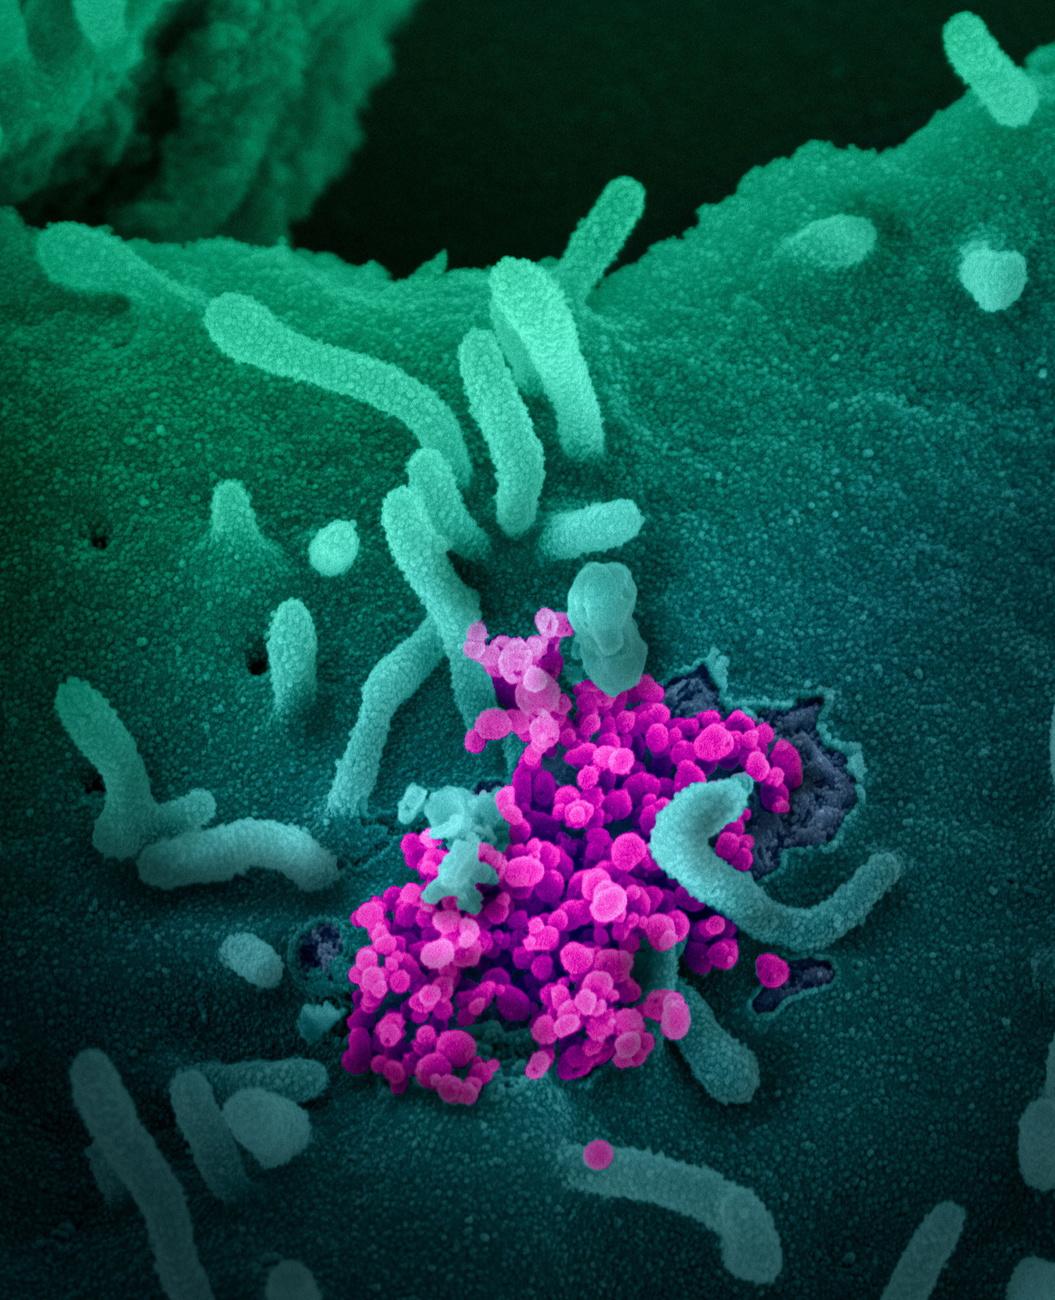 Le SARS-CoV-2 (en rose) vu grâce à la microscopie électronique à balayage. Le virus est aussi connu sous les noms de 2019-nCoV, Covid-19, ou, plus communément, de "coronavirus". [Keystone/epa/niaid-rml - National Institutes of Health (NIH)]